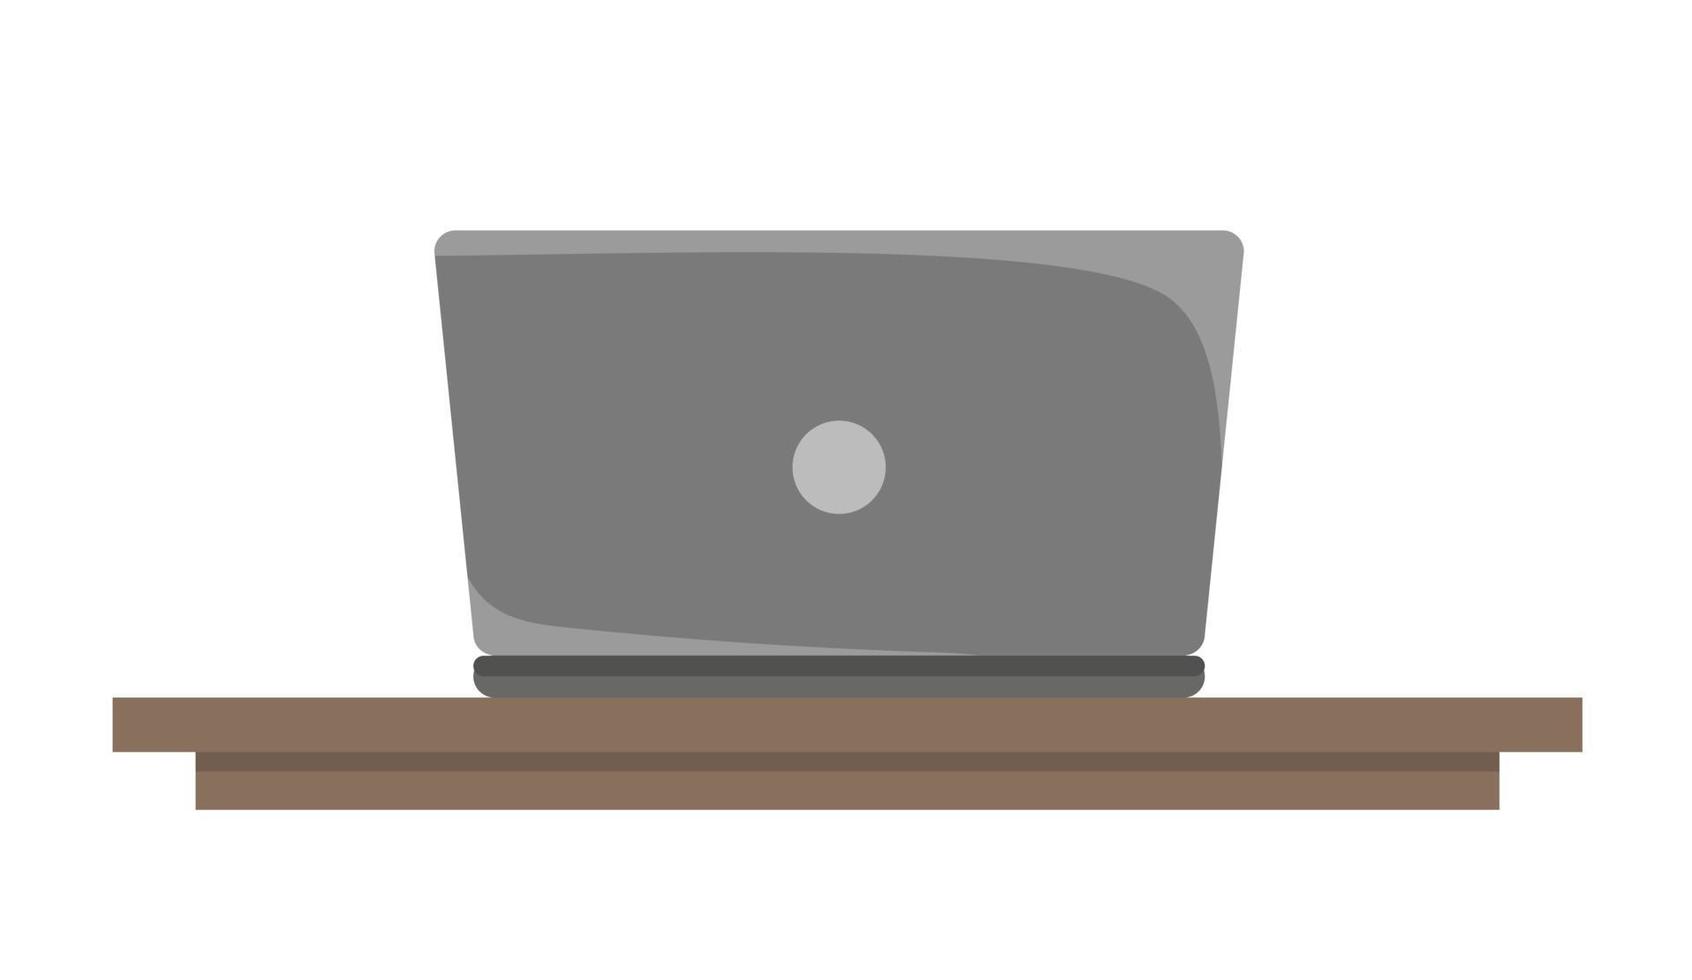 ordinateur portable sur la table en style cartoon. illustration vectorielle isolée sur fond blanc vecteur